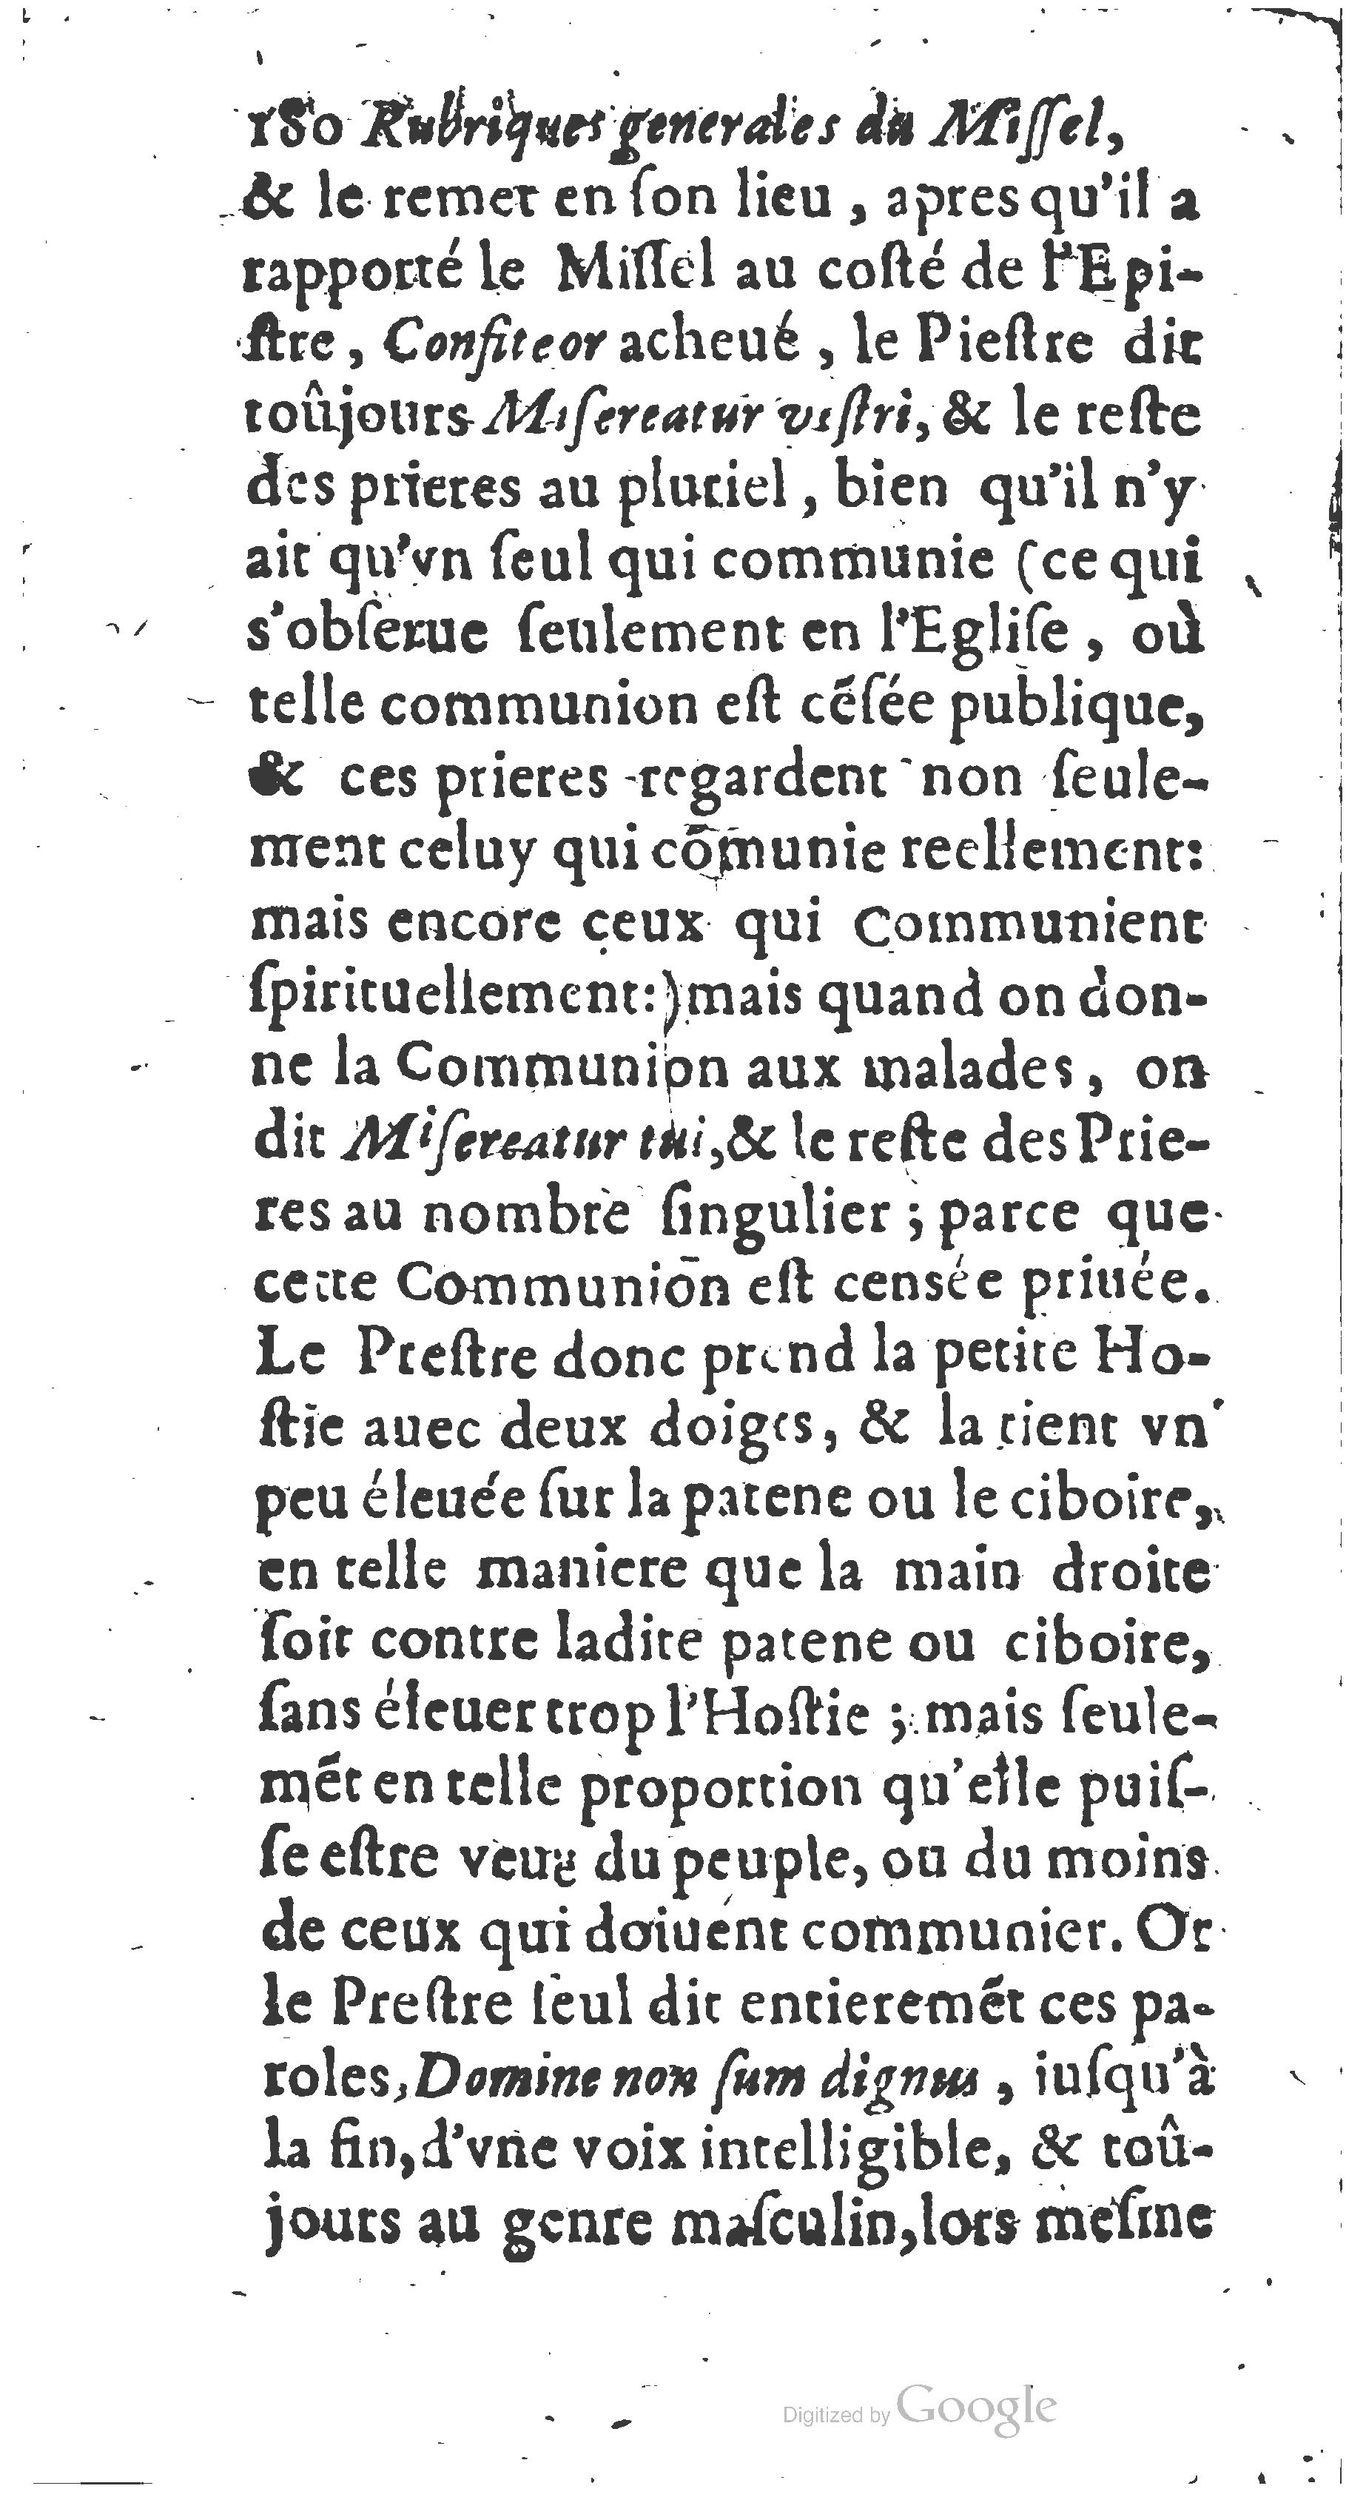 1651 Abrégé du trésor des cérémonies ecclésiastiques Guillermet_BM Lyon_Page_199.jpg